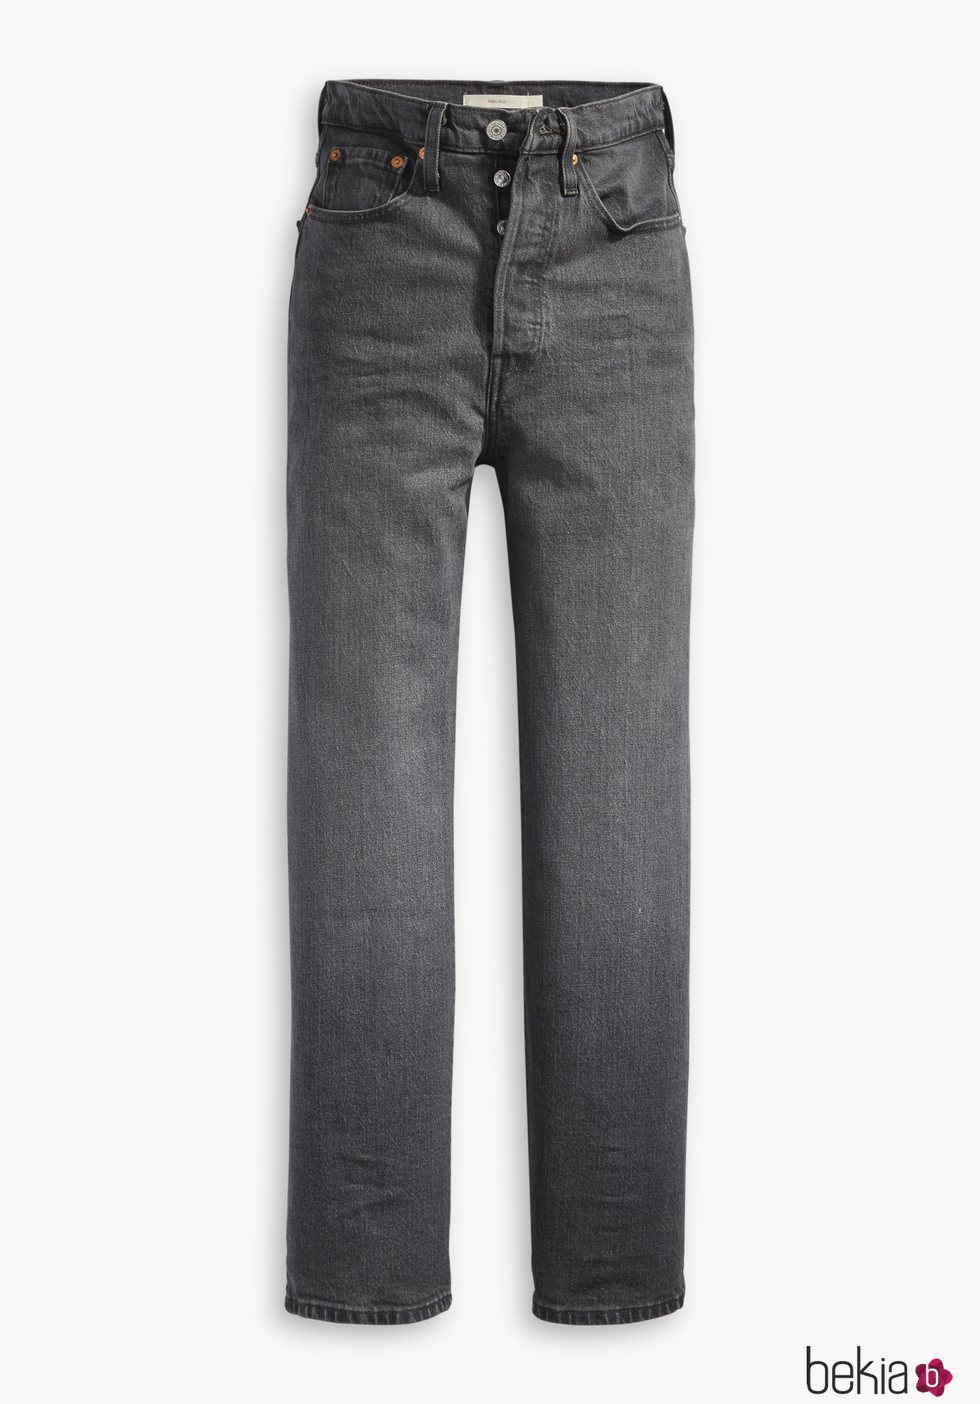 Jeans gris oscuro nueva colección de Levi's